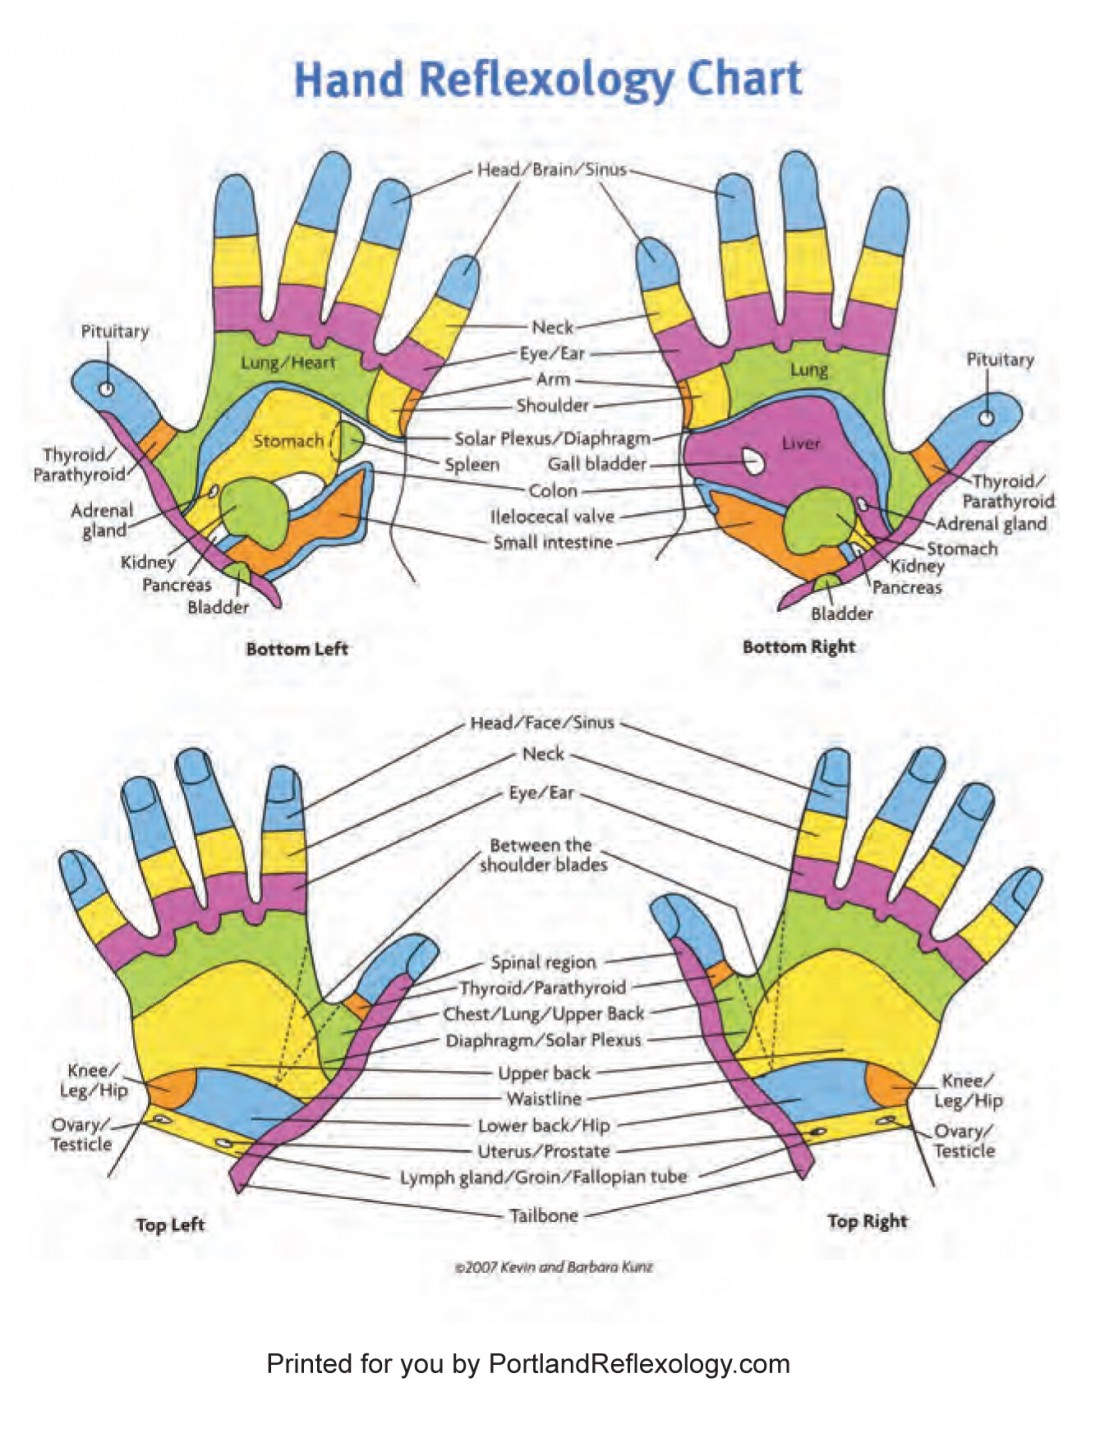 Wrist Reflexology Chart